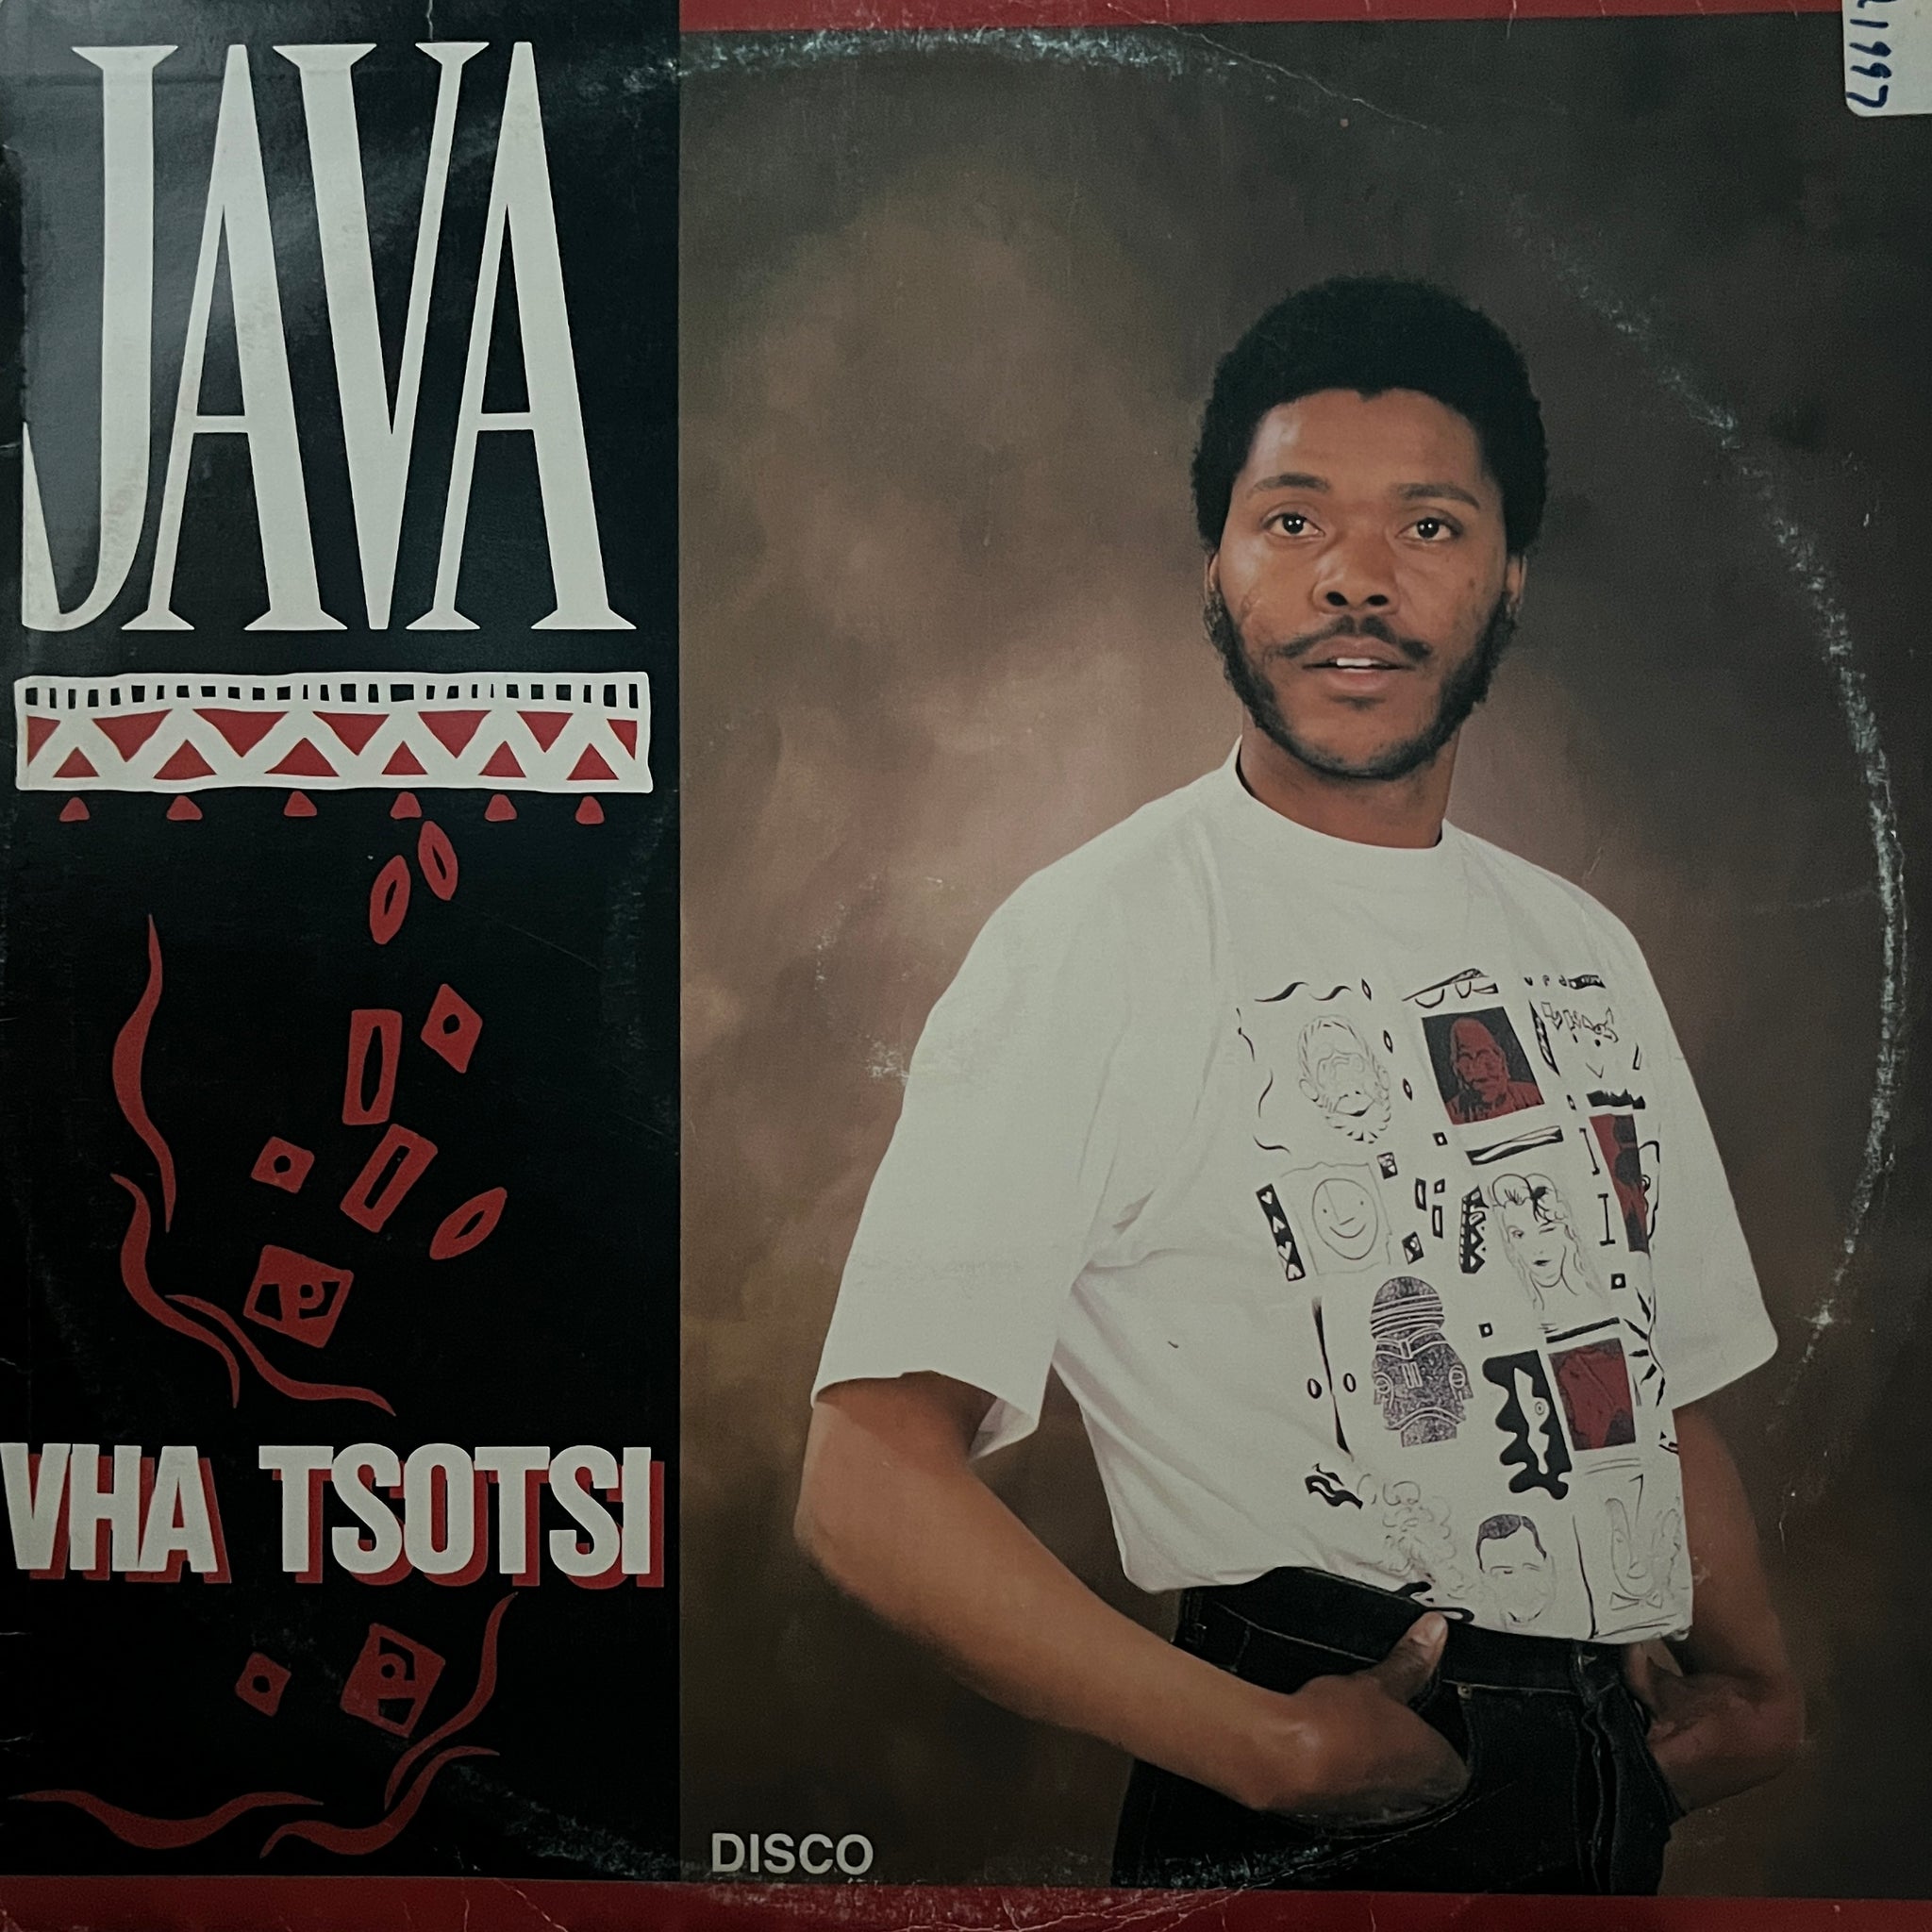 Java - Vha Tsotsi